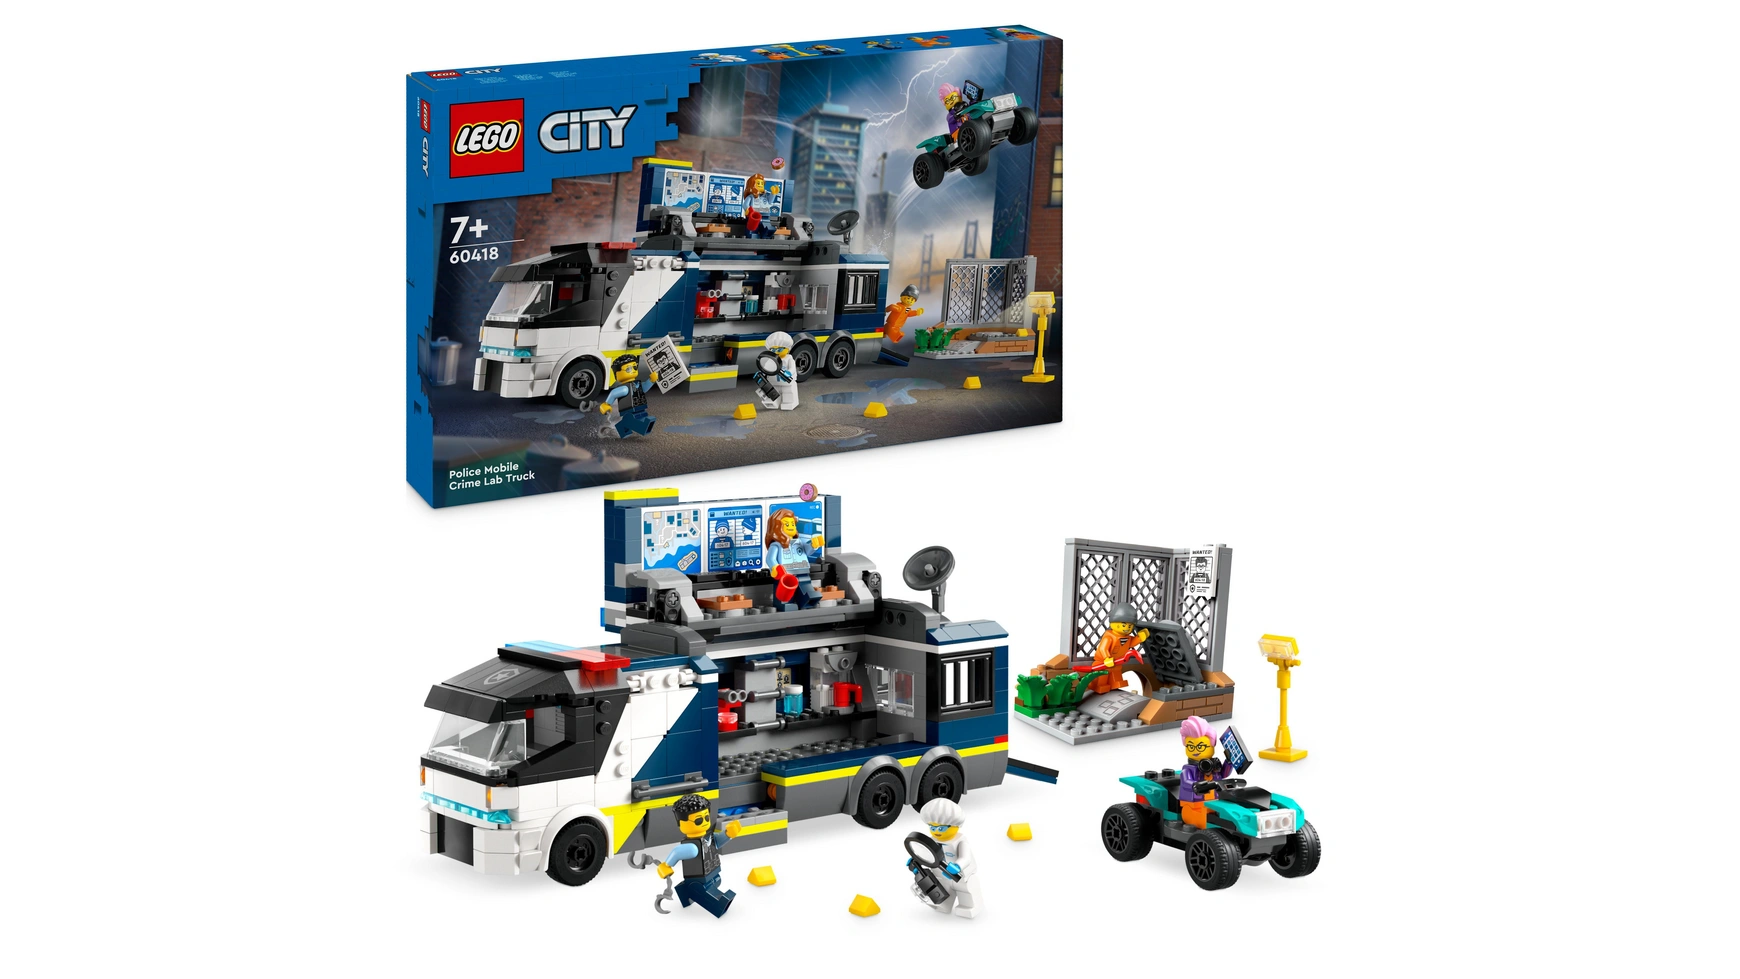 Lego City Полицейский грузовик с лабораторией, полицейский набор с игрушечным грузовиком